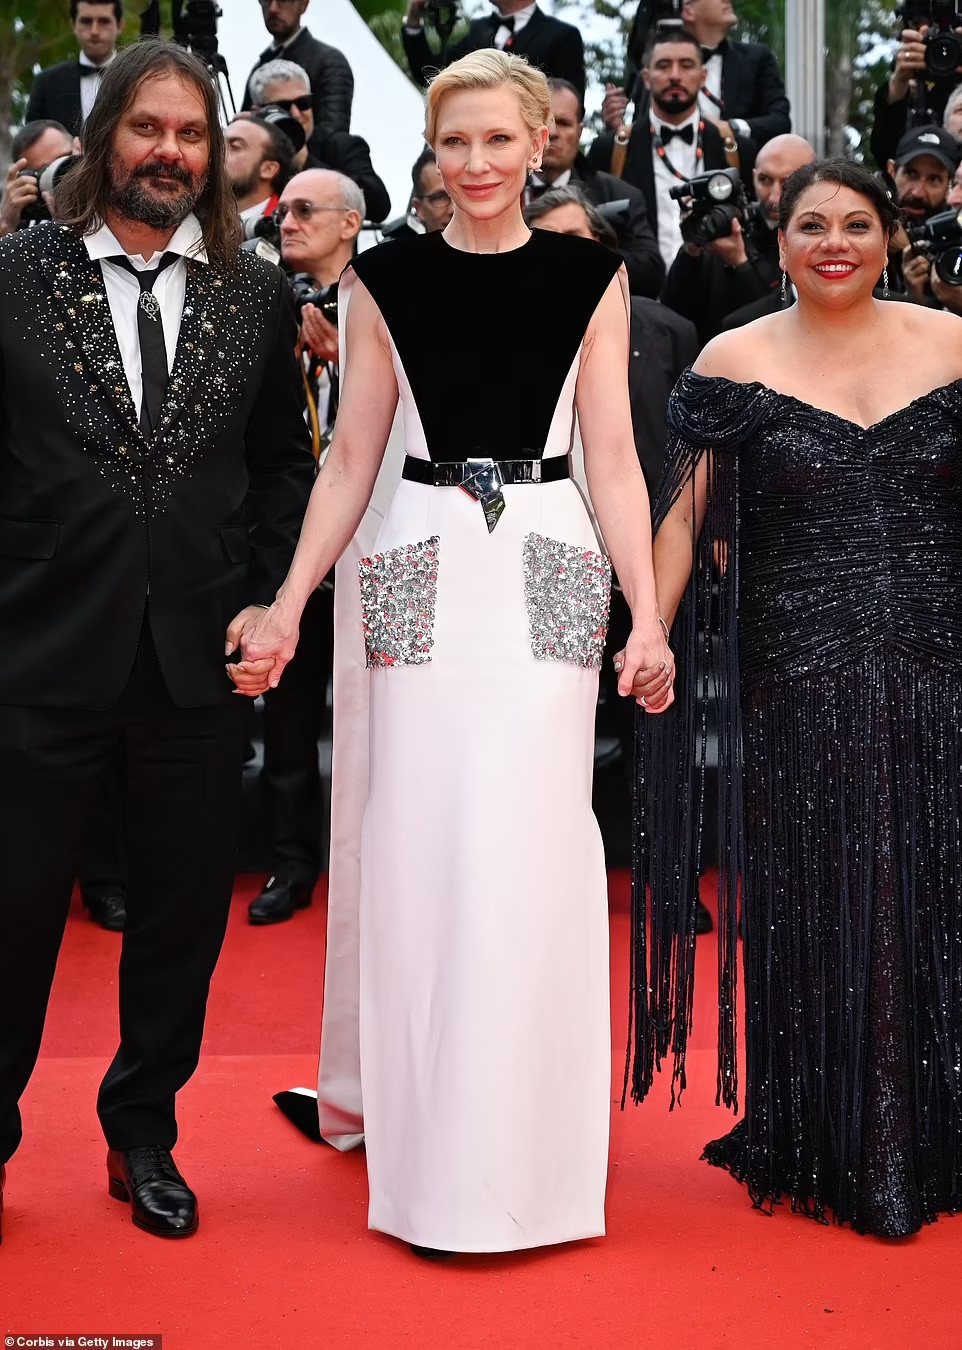 Nữ hoàng sắc đẹp ở Cannes diện váy tiệc tùng khoe trọn vòng 1